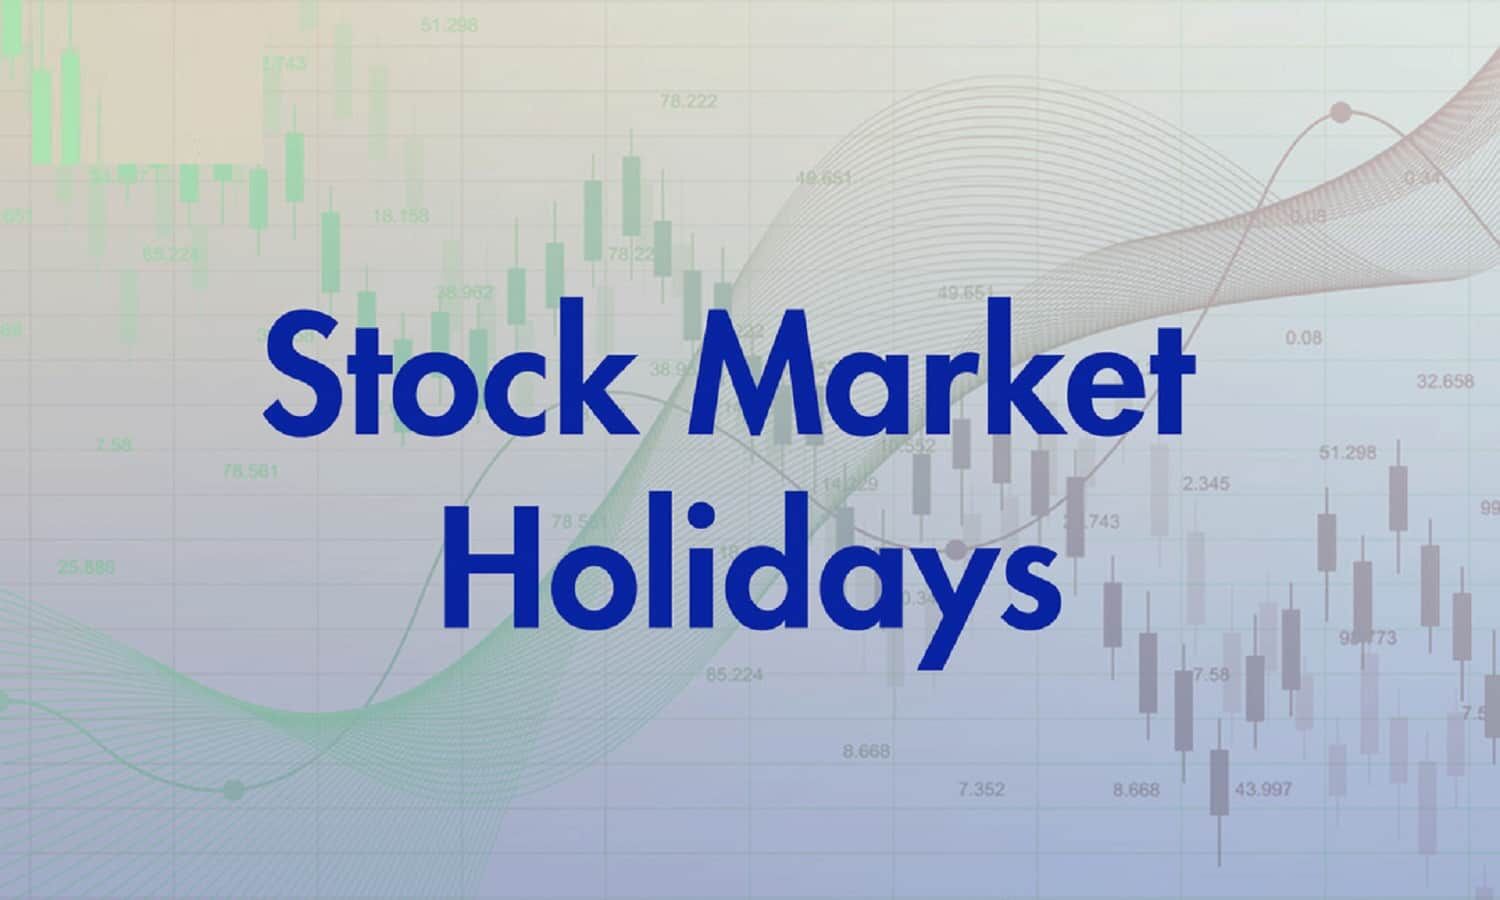 Today Stock Market Holiday स्टॉक मार्केट की आज छुट्टी है या नहीं